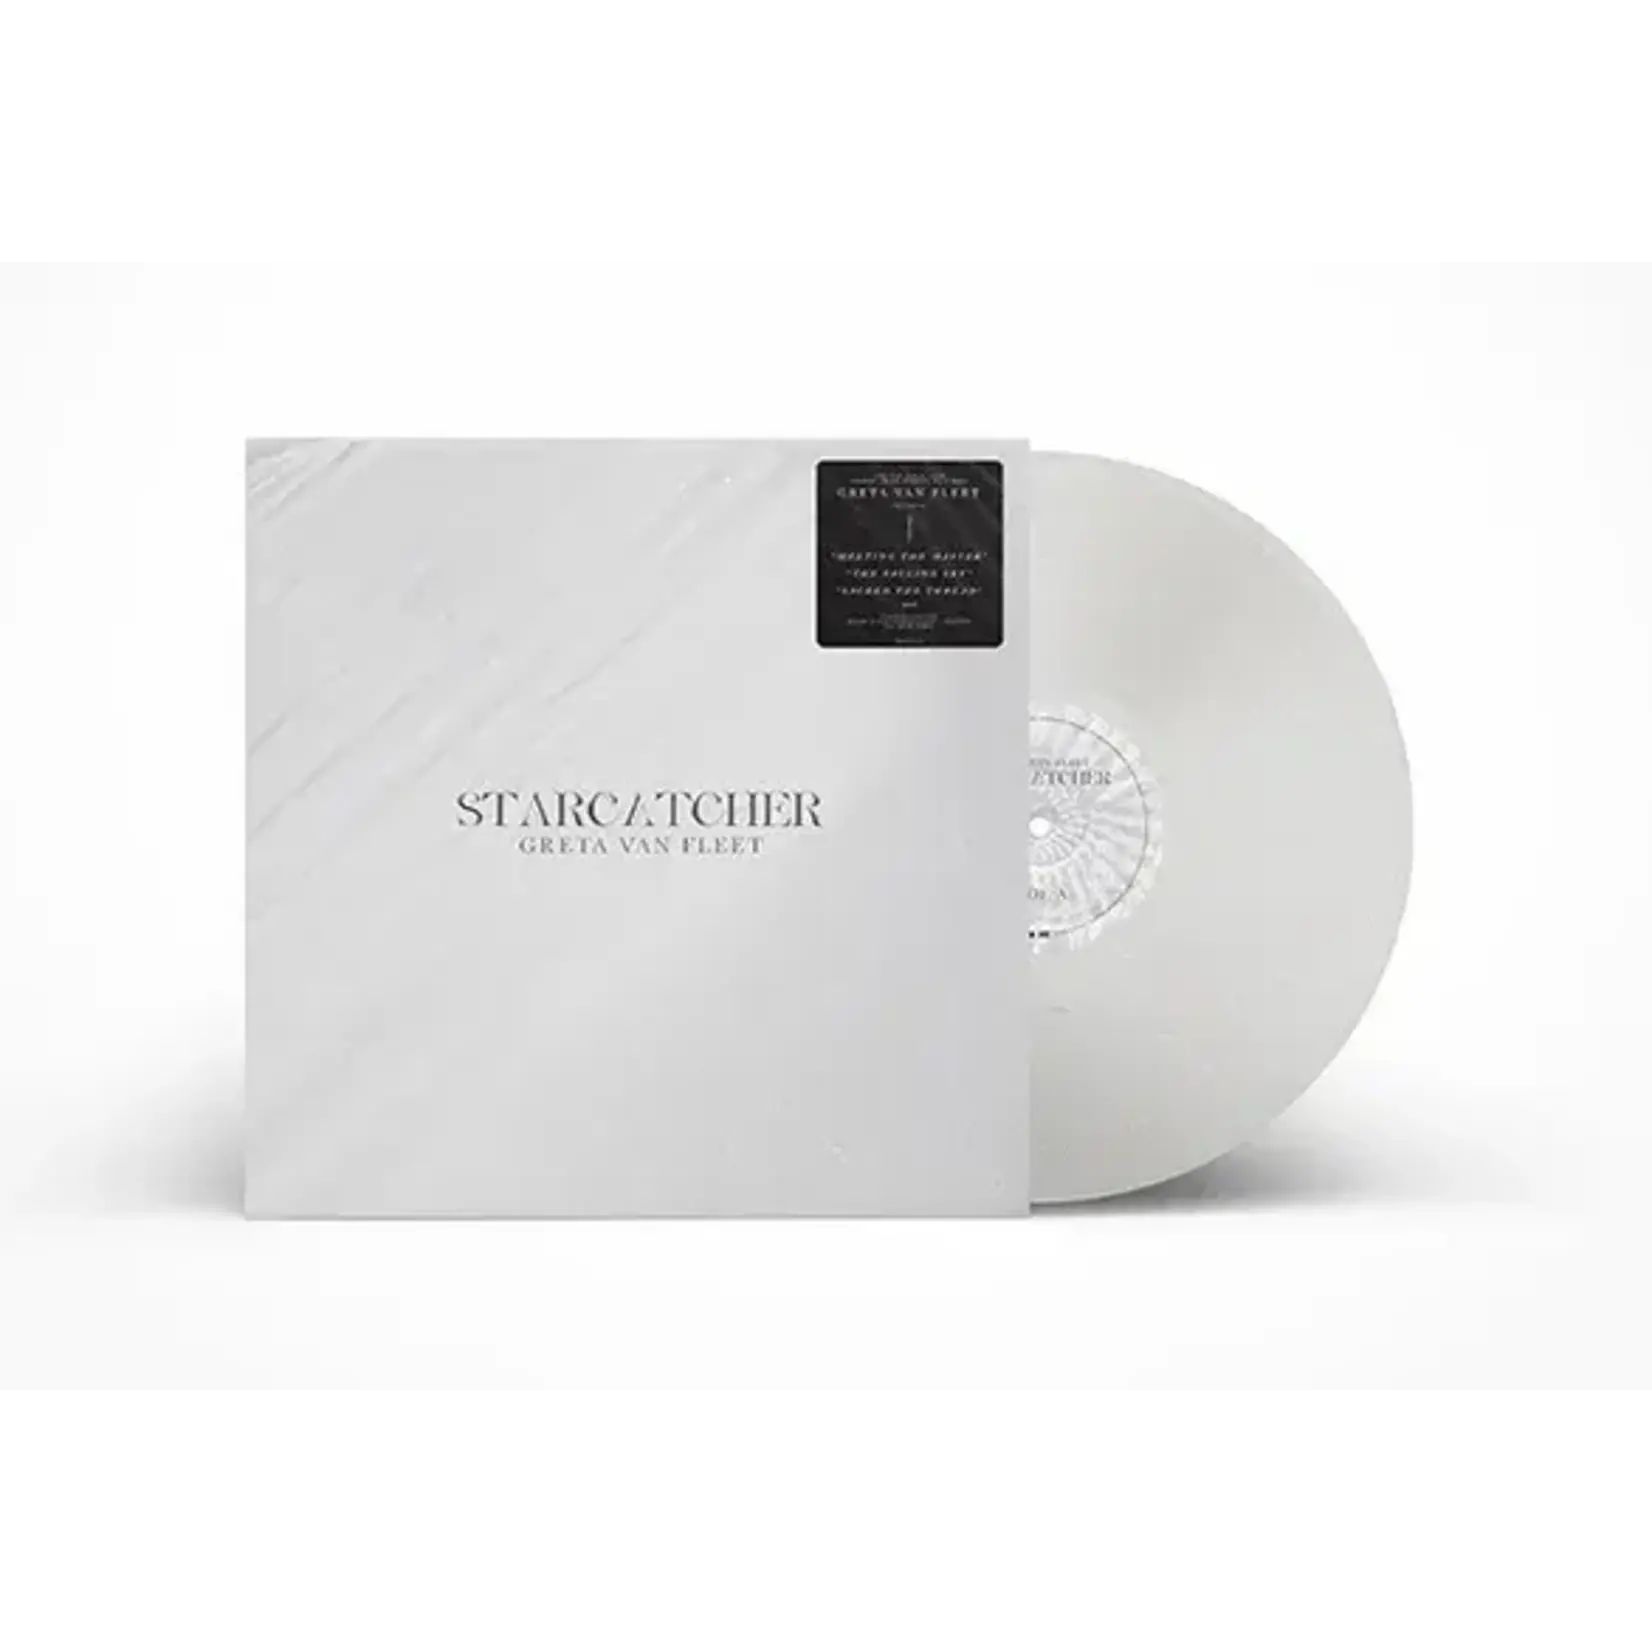 [New] Greta Van Fleet - Starcatcher (white vinyl, indie exclusive)